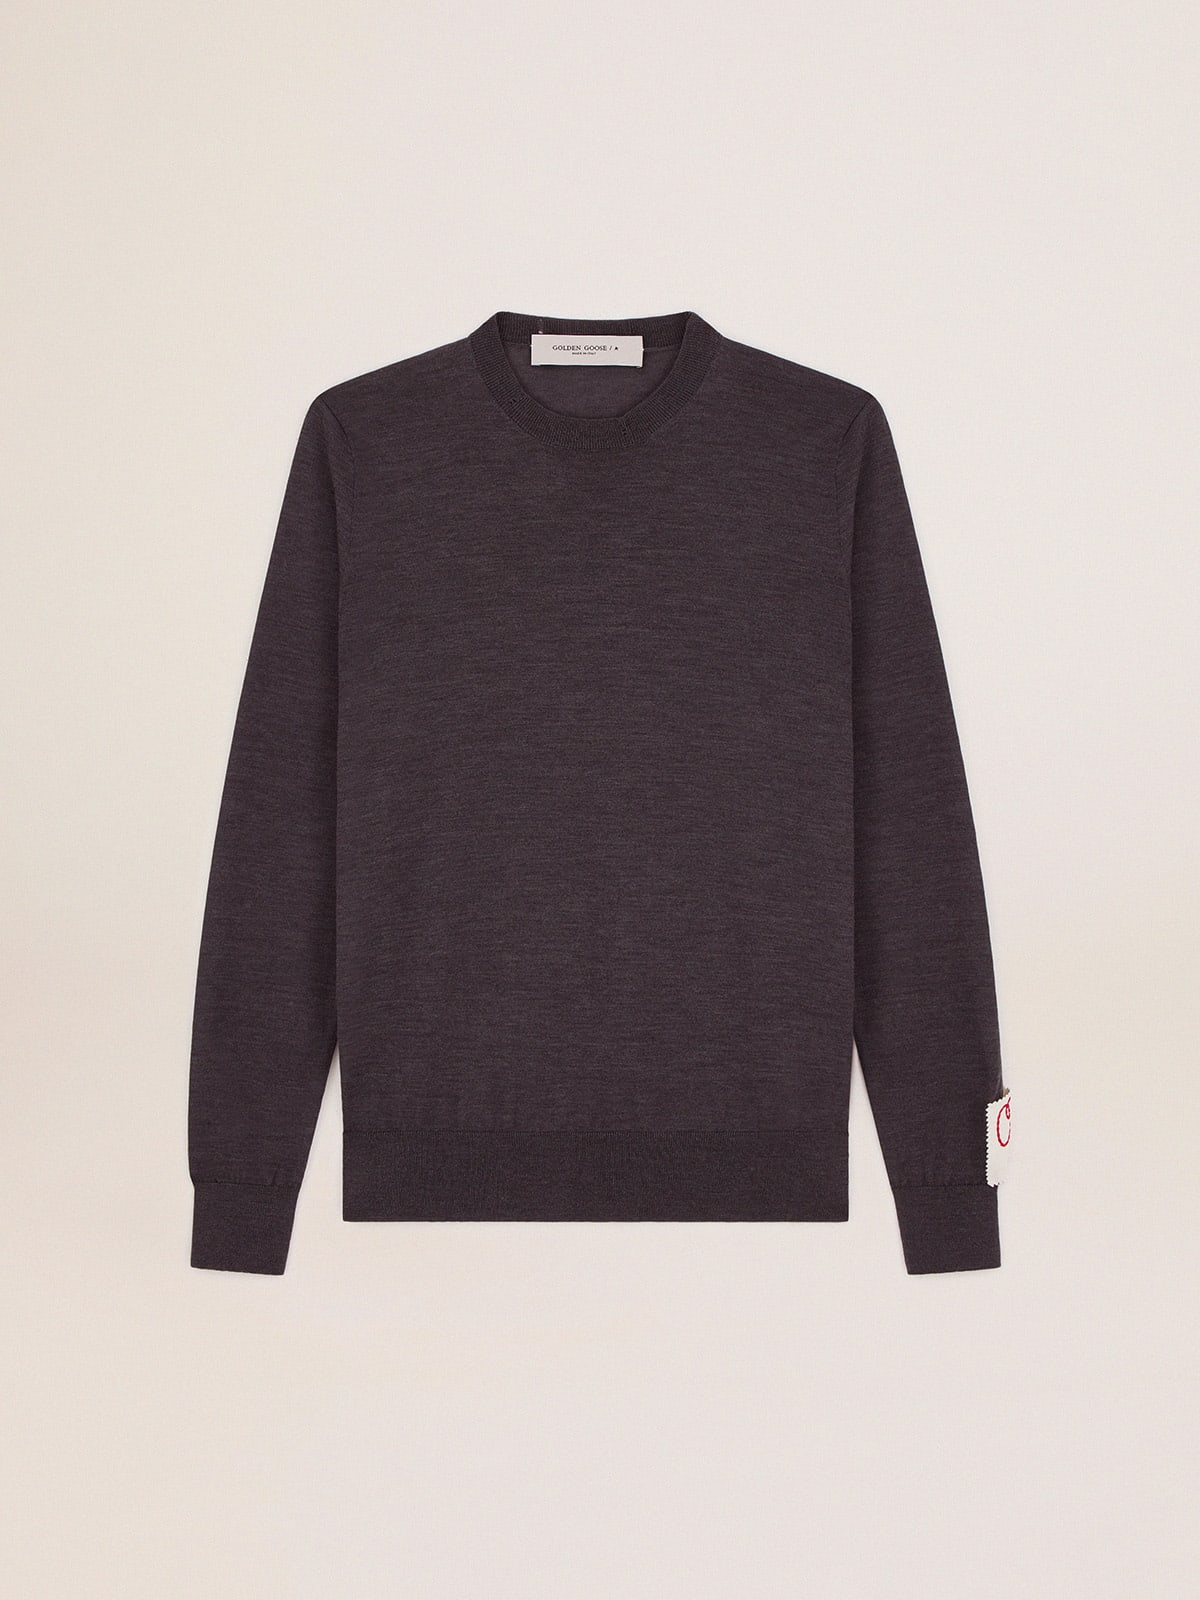 Round-neck sweater in dark gray melange wool